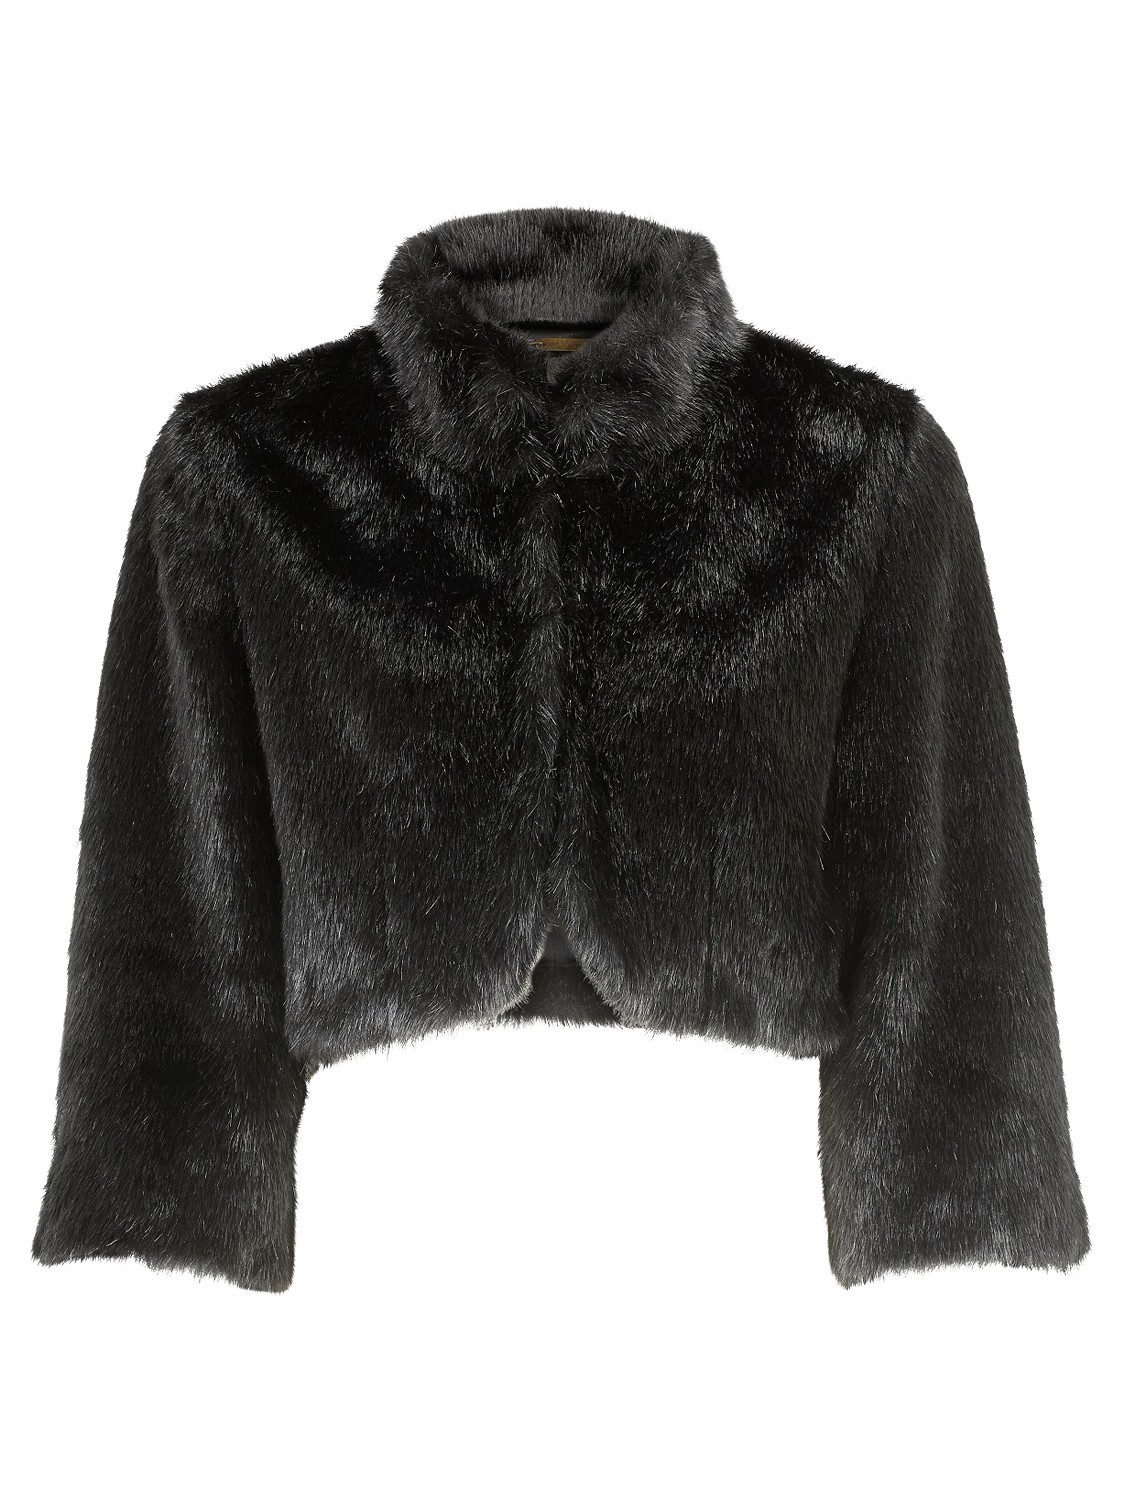 Alexon Faux Fur Cropped Jacket in Black | Lyst